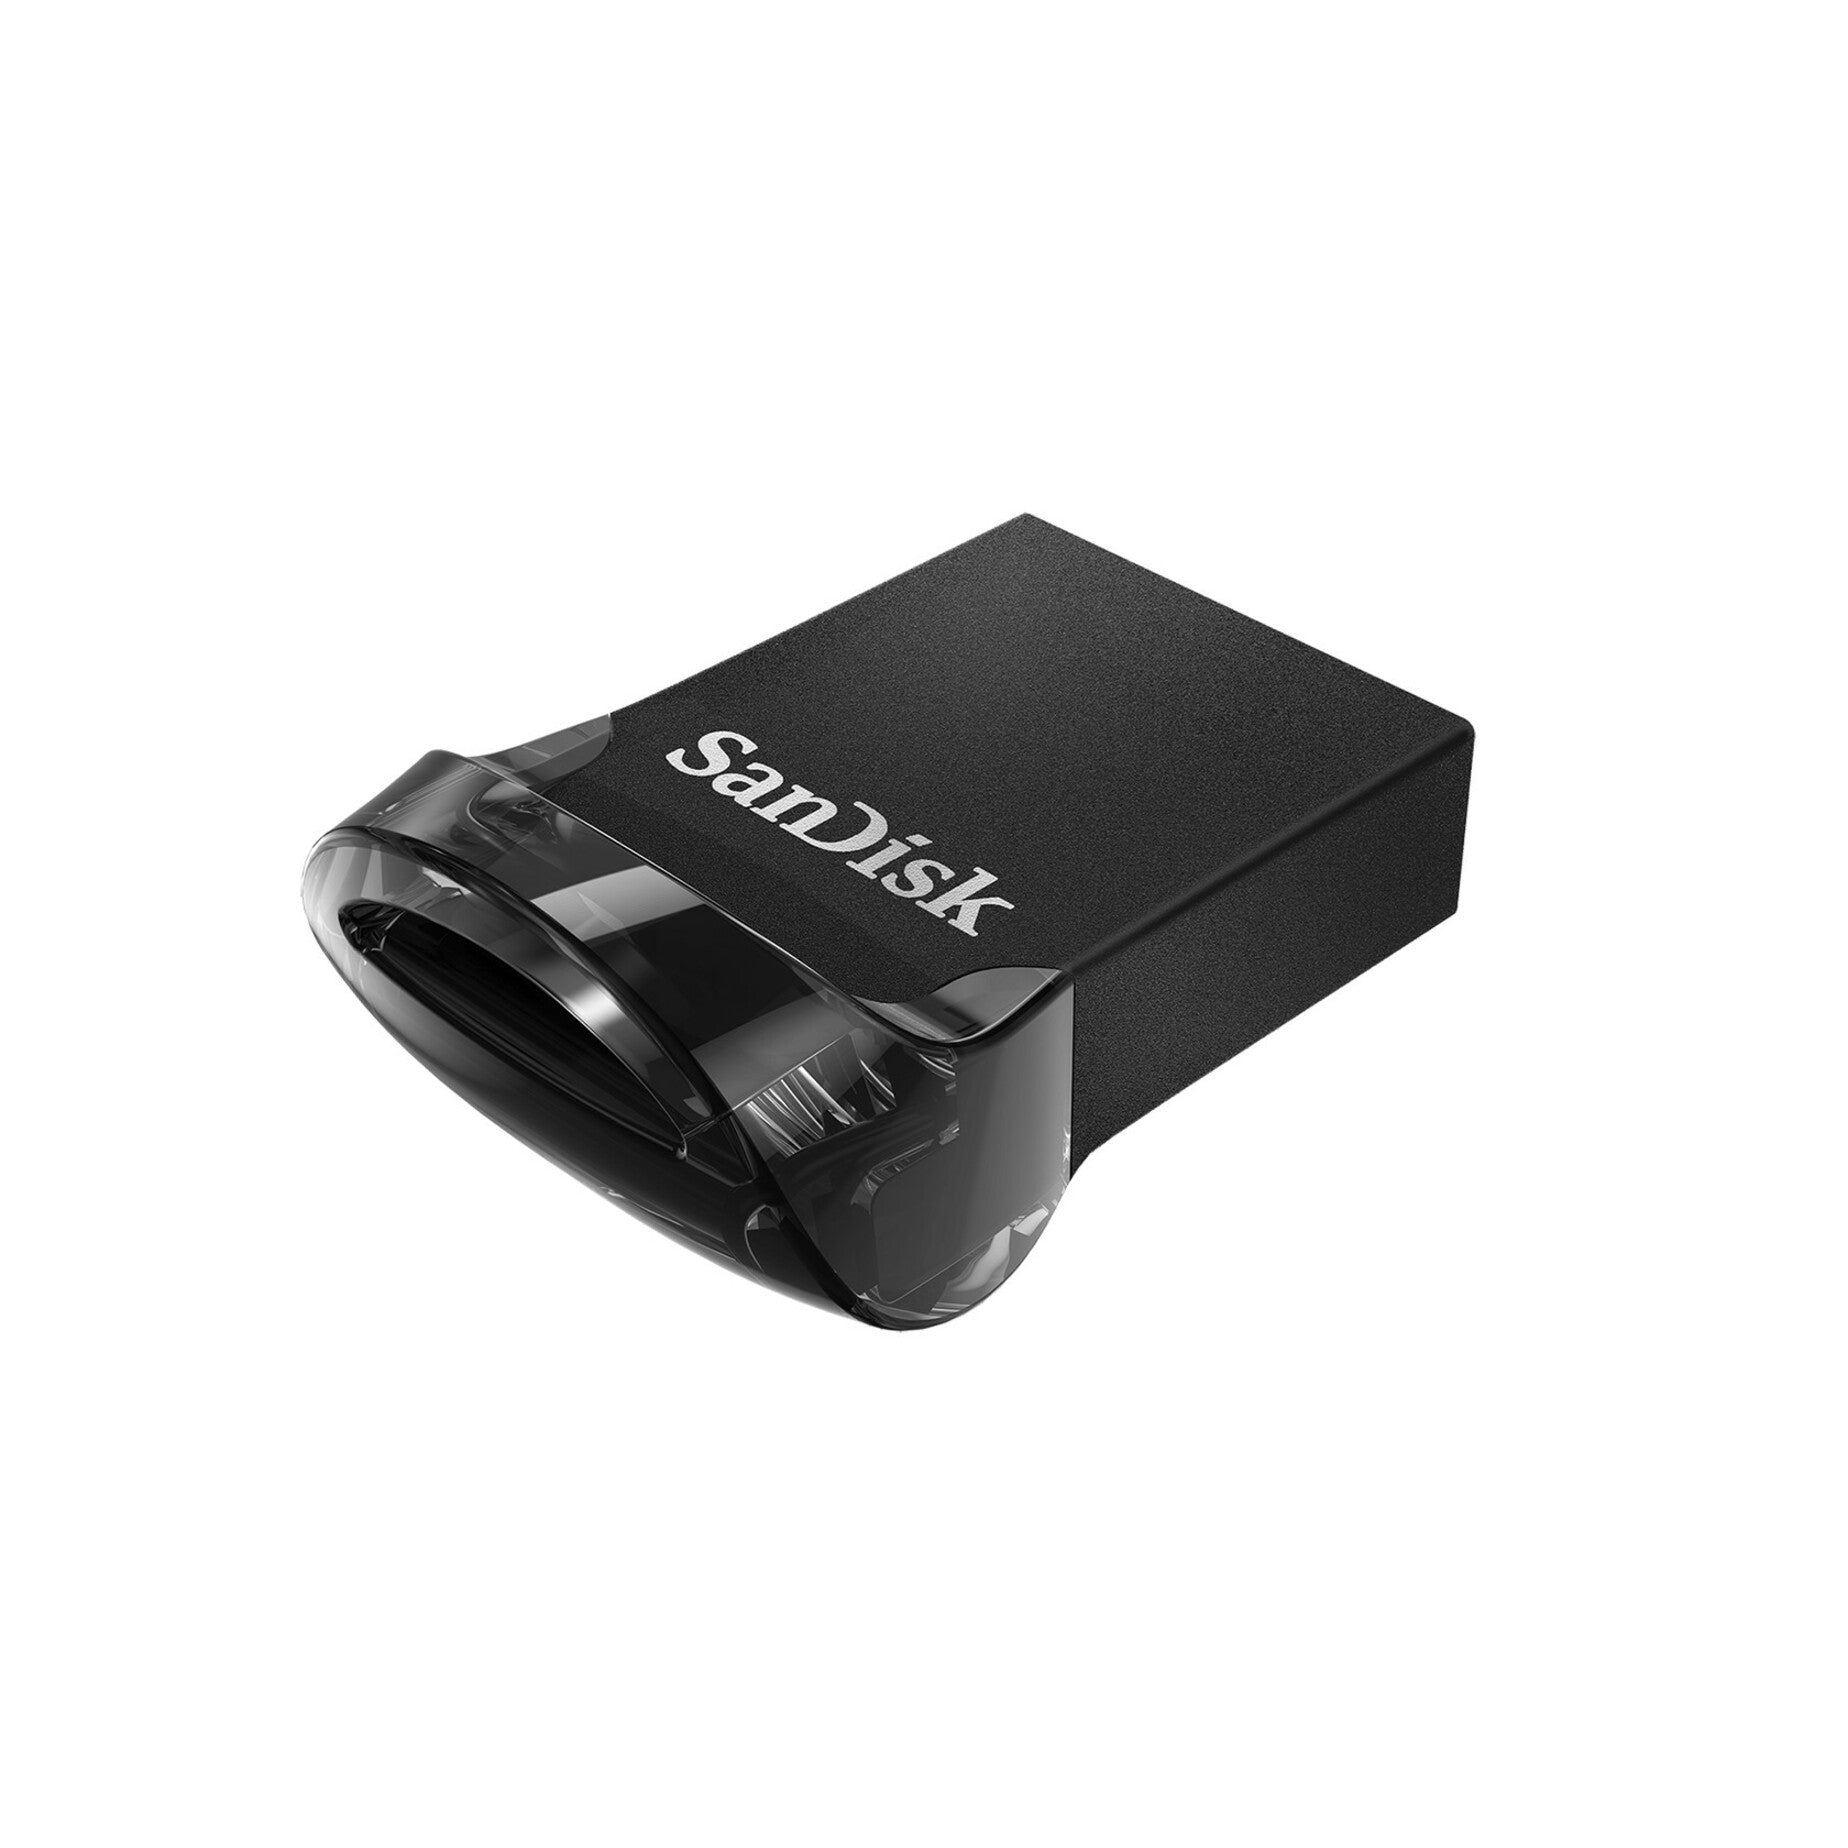 SanDisk SDCZ430-128G-A46 Ultra Fit USB 3.1 Flash Drive 128GB High-Speed Data Transfer and Compact Design SanDisk SDCZ430-128G-A46 Ultra Fit USB 3.1 Flash Drive 128GB Trasferimento dati ad alta velocità e design compatto